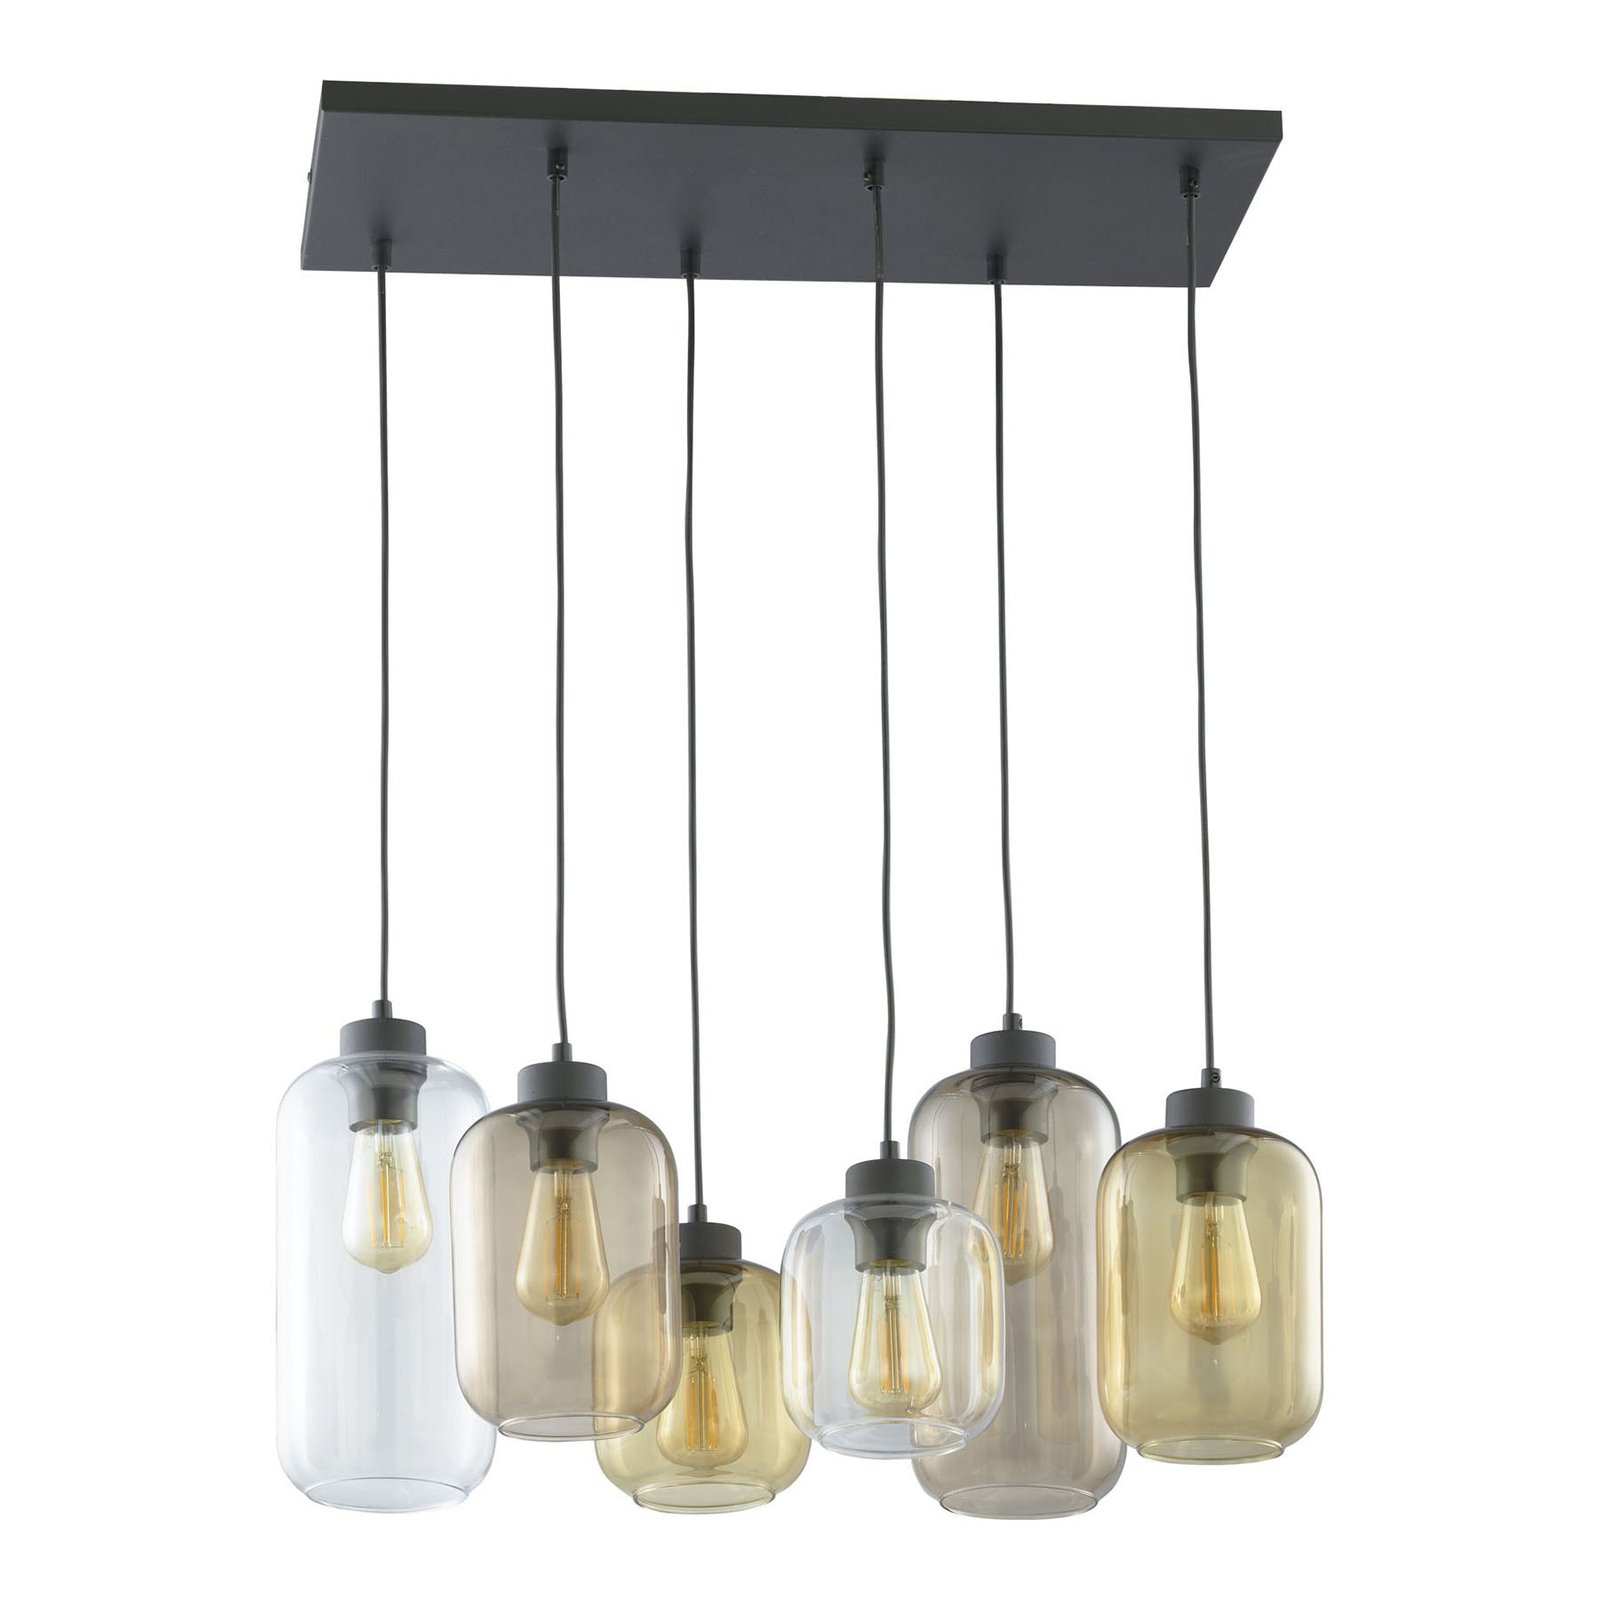 Hanglamp Marco Brown, 6-lamps, helder/bruin